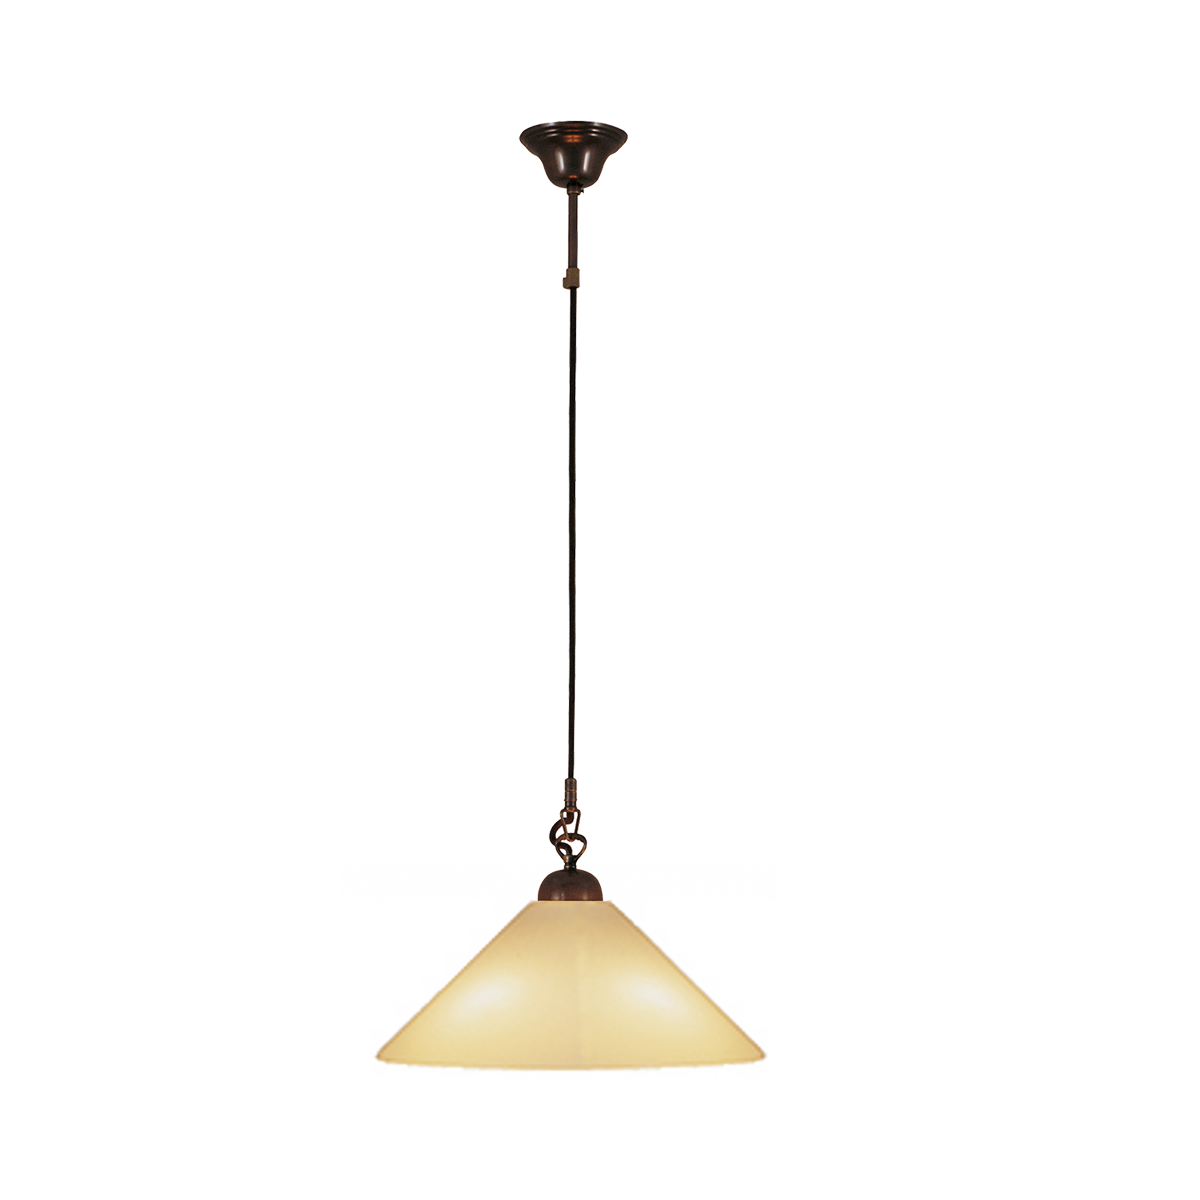 Anno 1900 Schnur Pendel in Messing brüniert oder satiniert Textilkabel und Lampenschirm in Opalglas D=39cm ambra